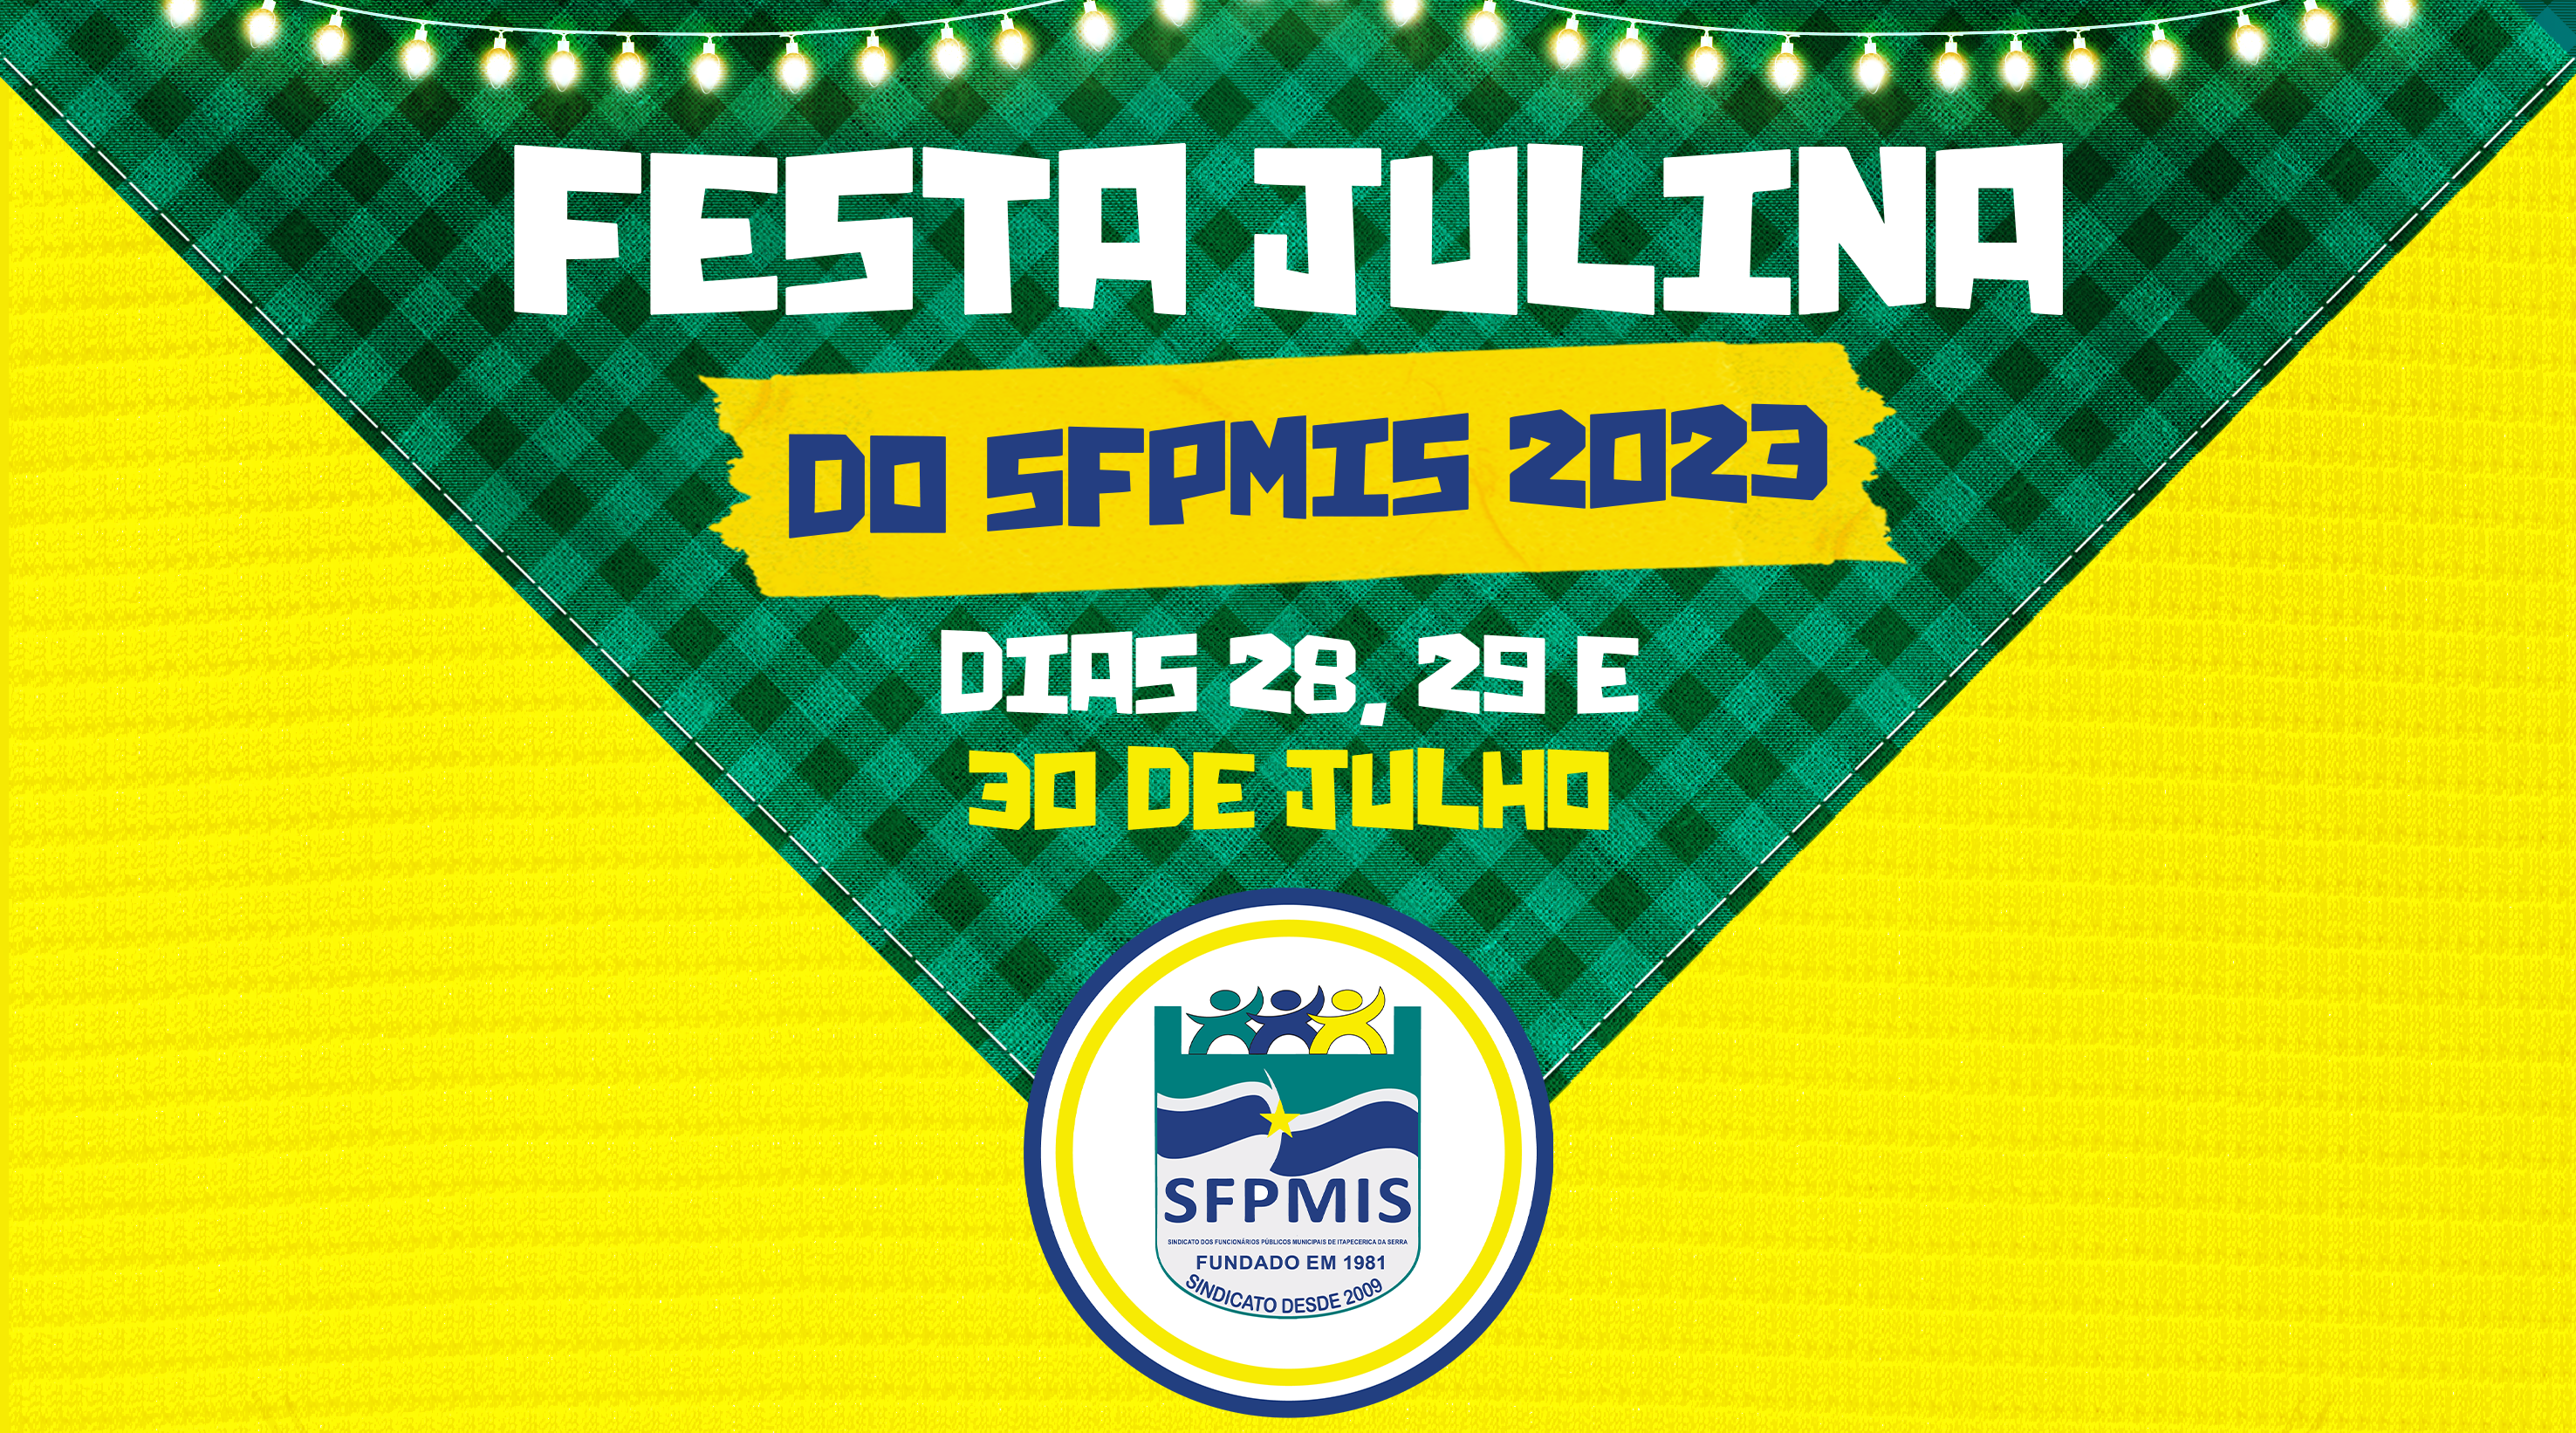 Festa Julina do SFPMIS 2023 | Curta a melhor festança da região nos dias 28, 29 e 30 de julho